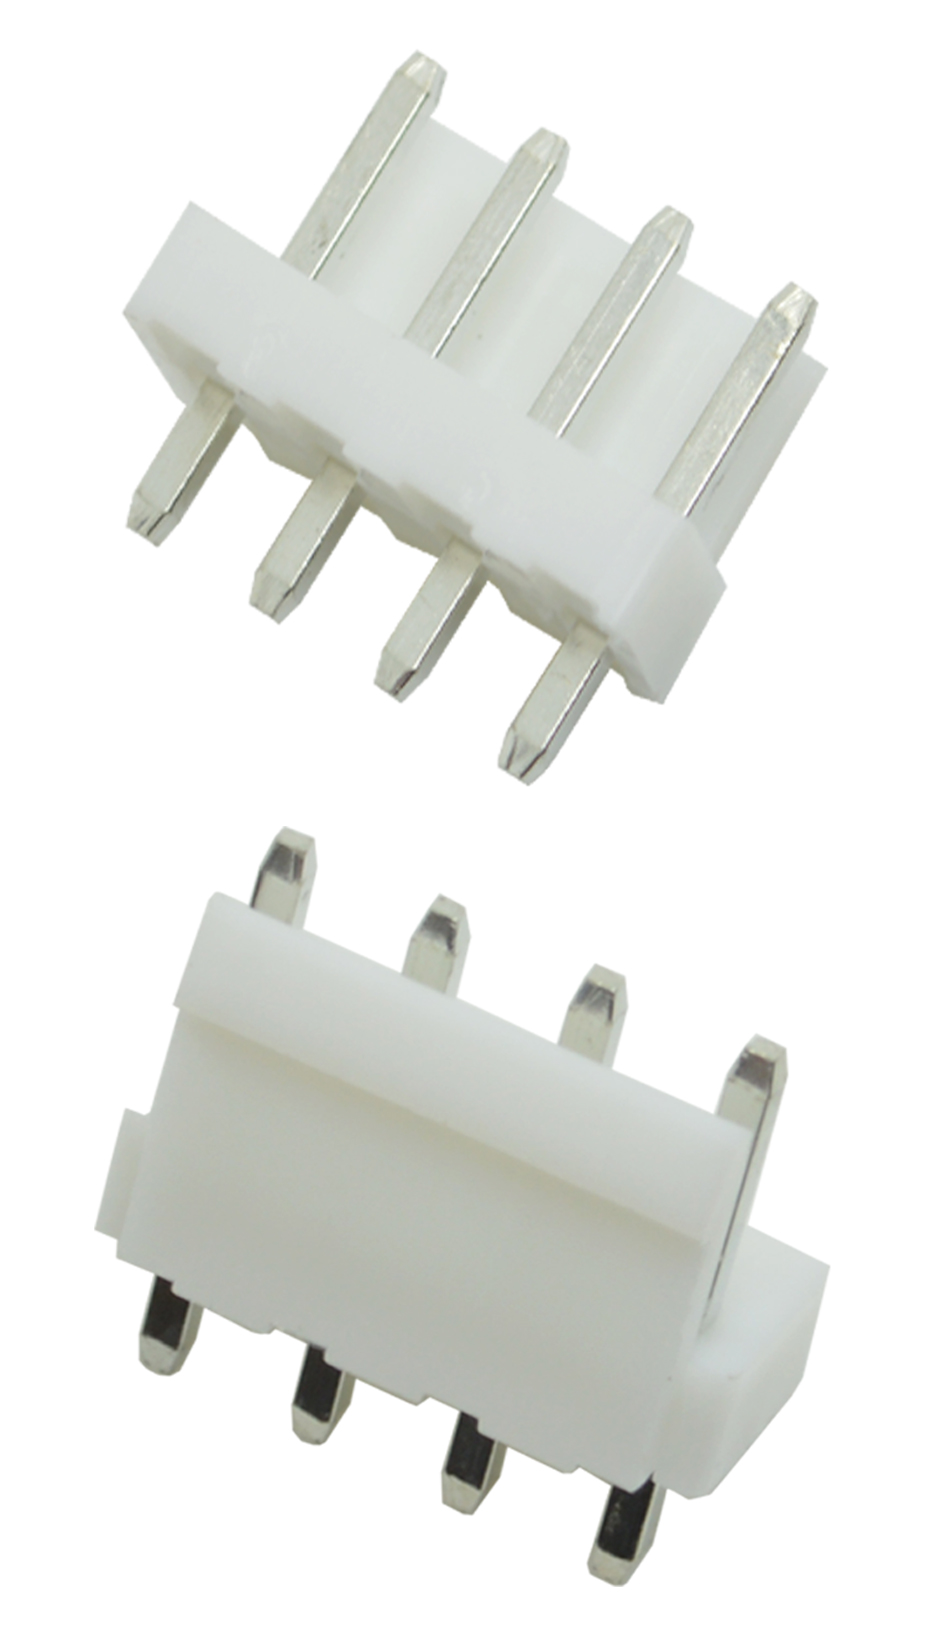 直针插座 VH3.96 -2P间距拔插式接插件 直针式板端座,宏利